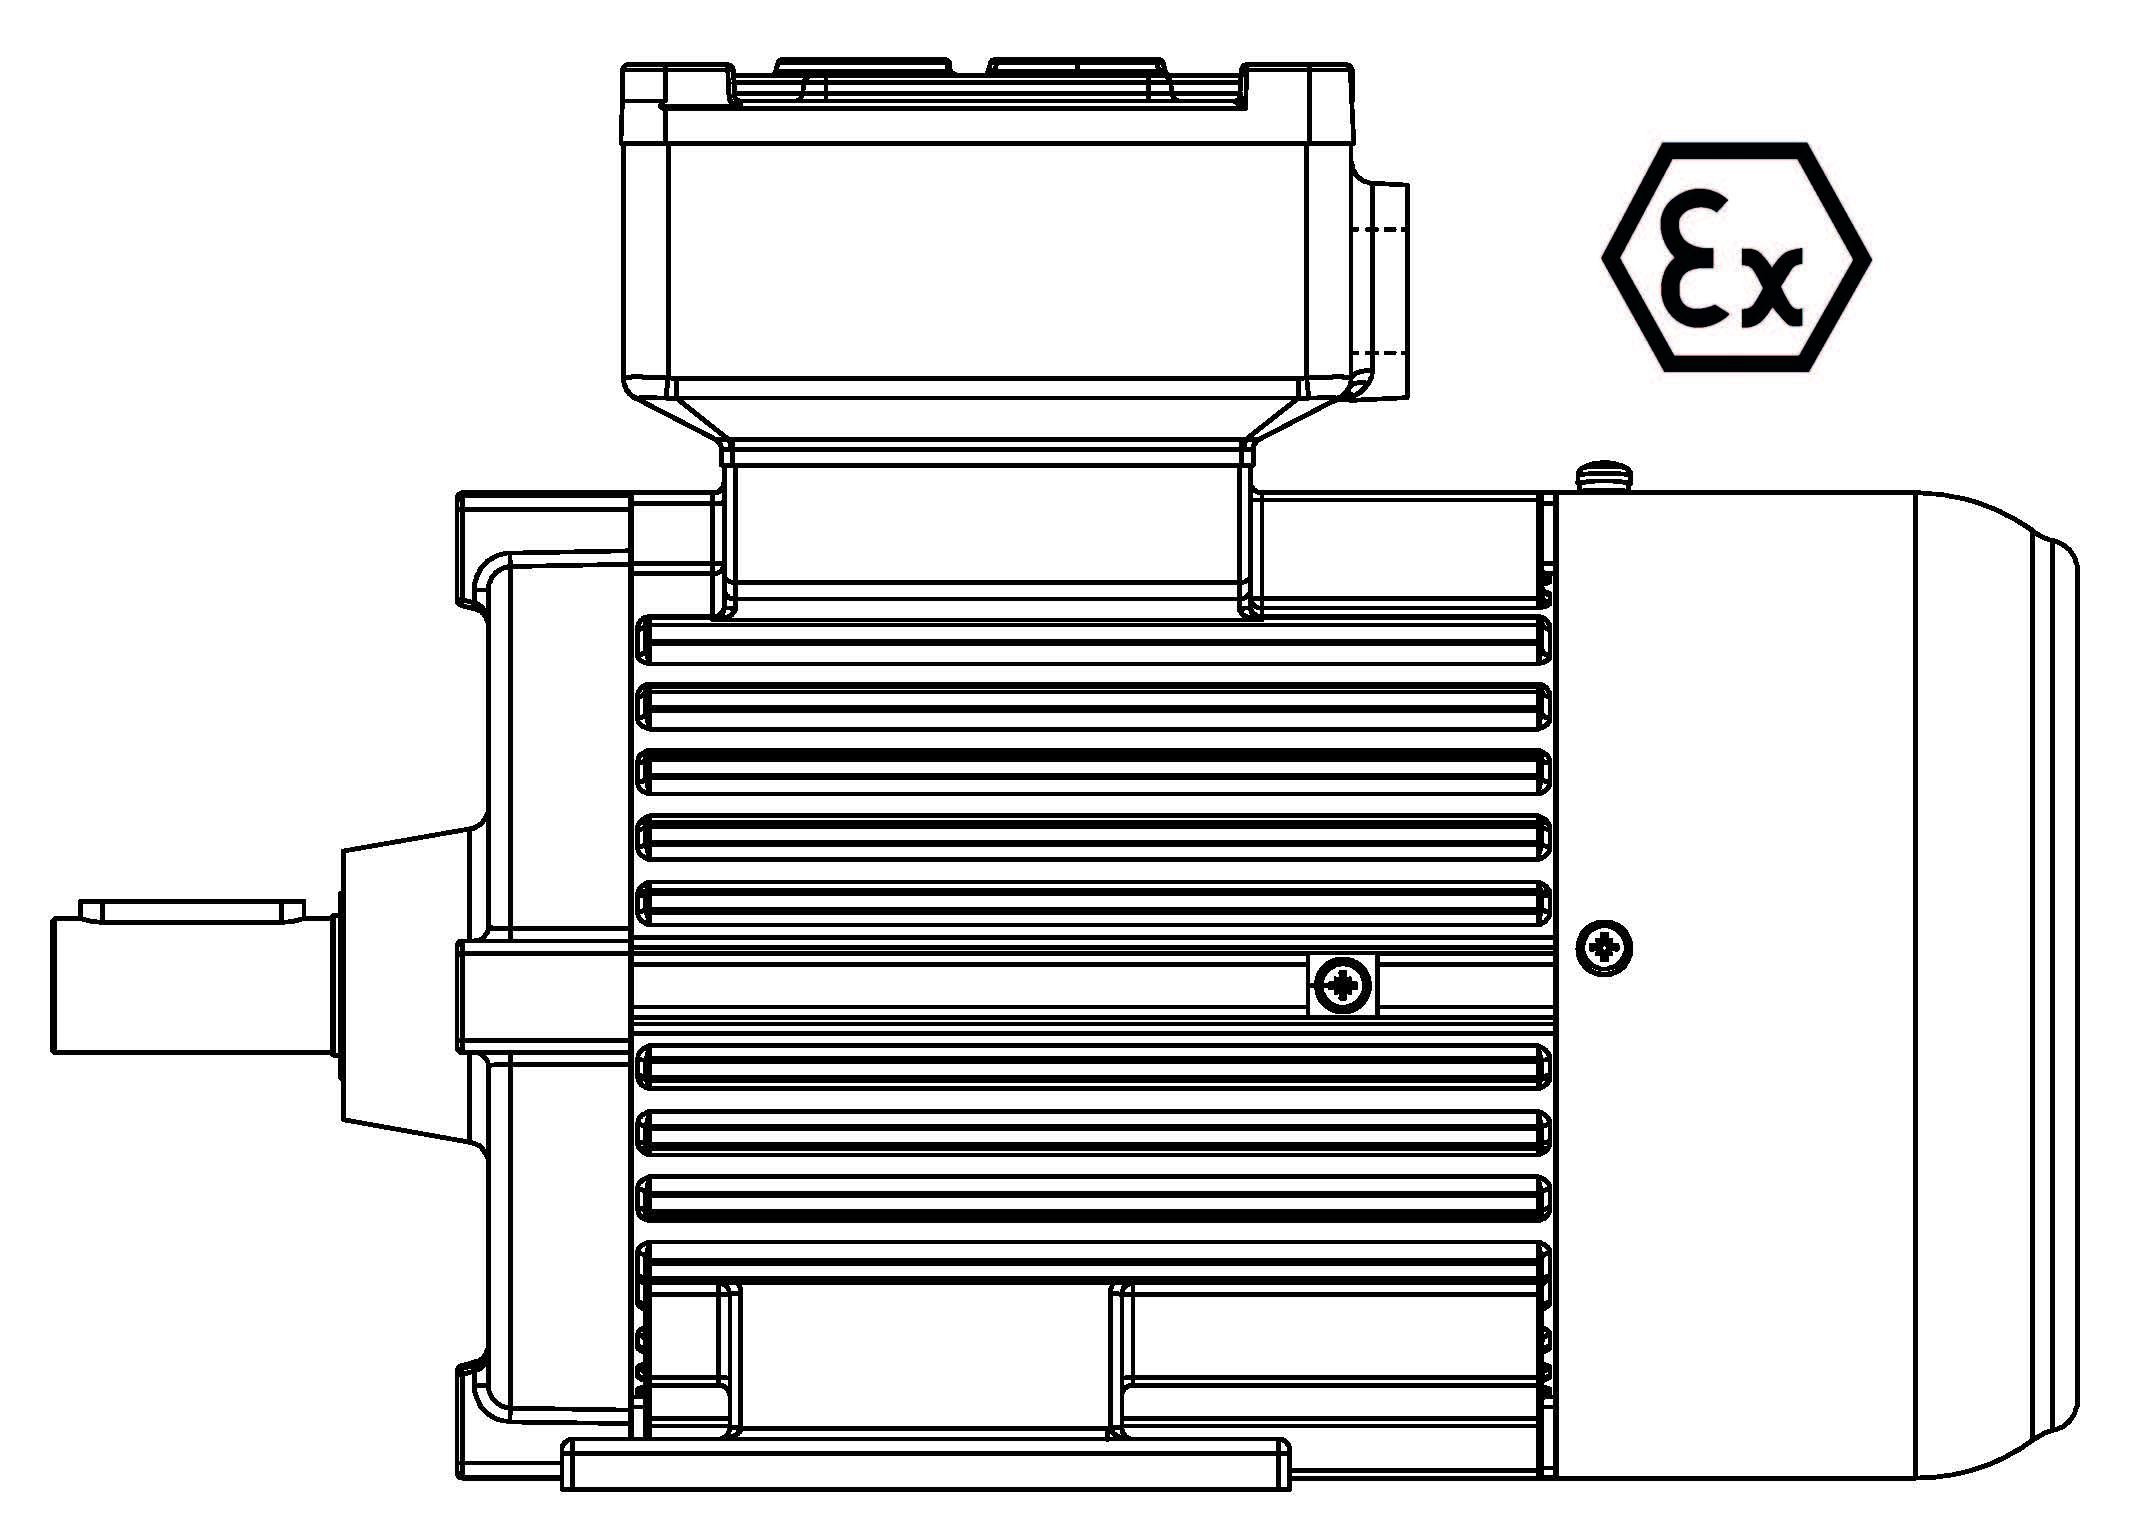 ATEX-160-4P 15 B3 400/3/50 Ex d IIB Эл.двигатель B3, разм. 160, 1450 об/мин, 15 кВт, 400 В, 3ф, 50 Гц